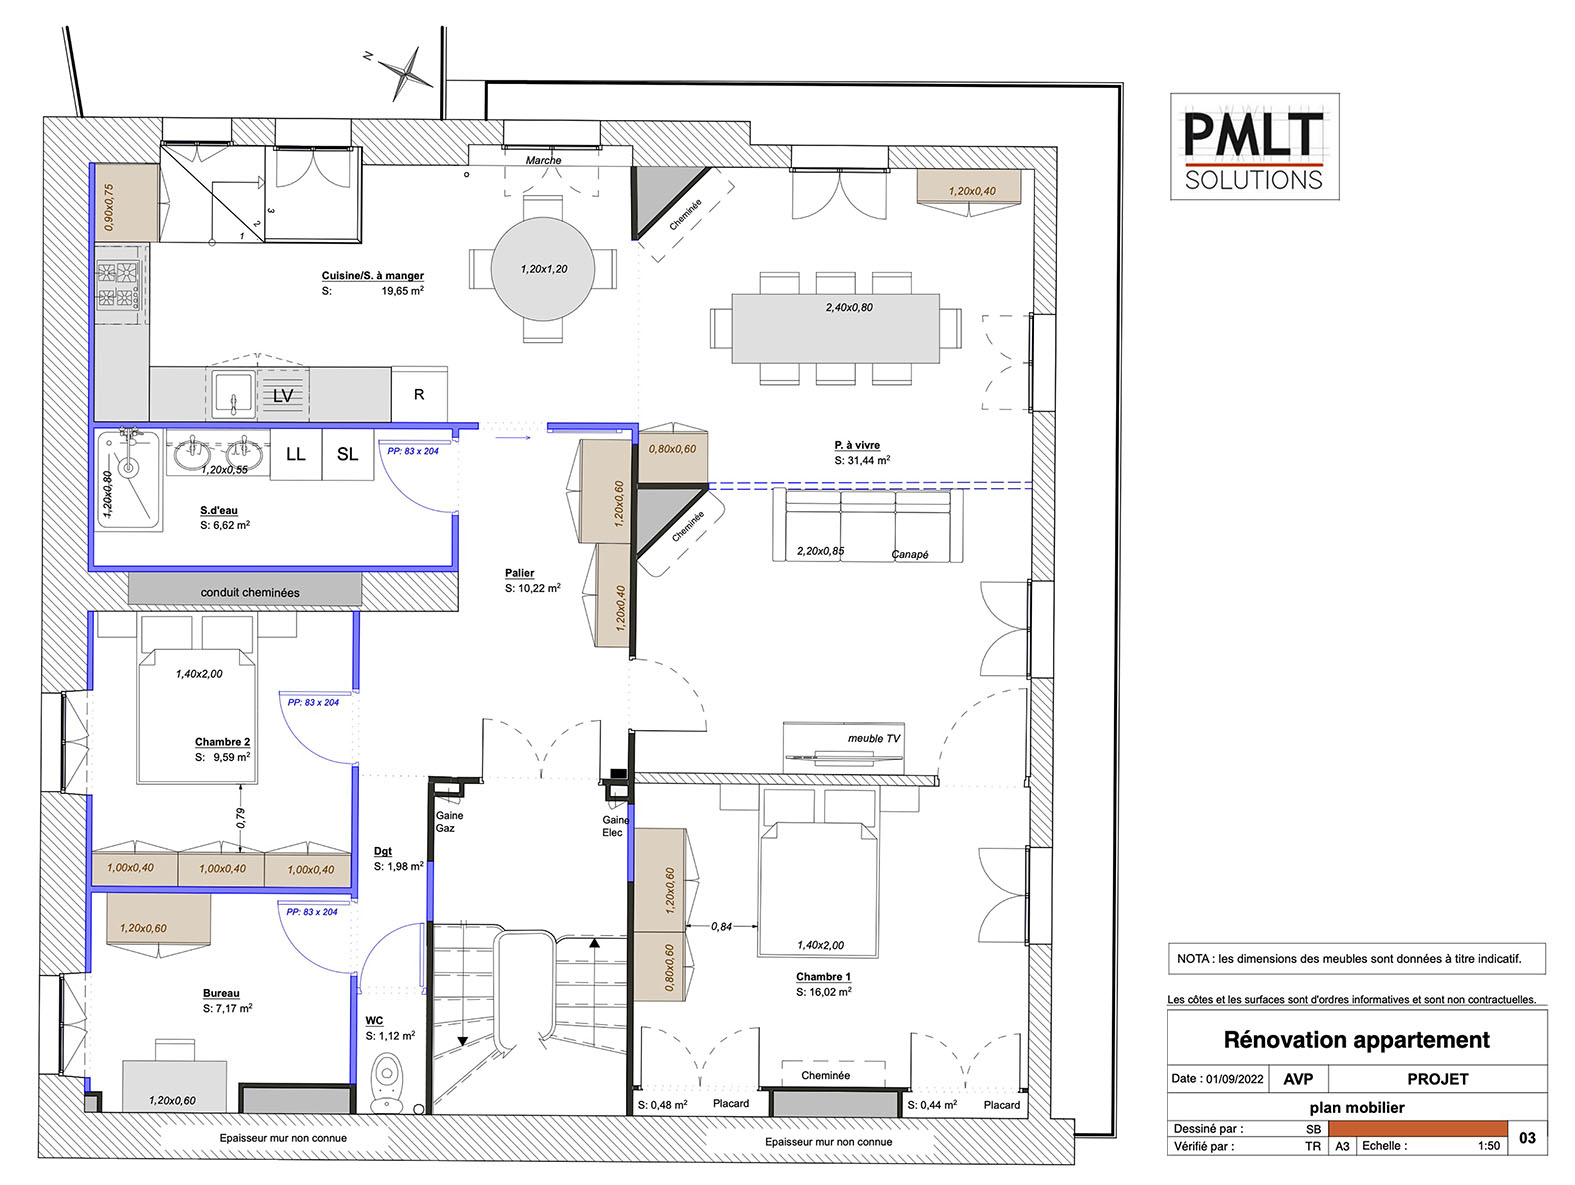 Plan du projet d'un appartement avec mobilier